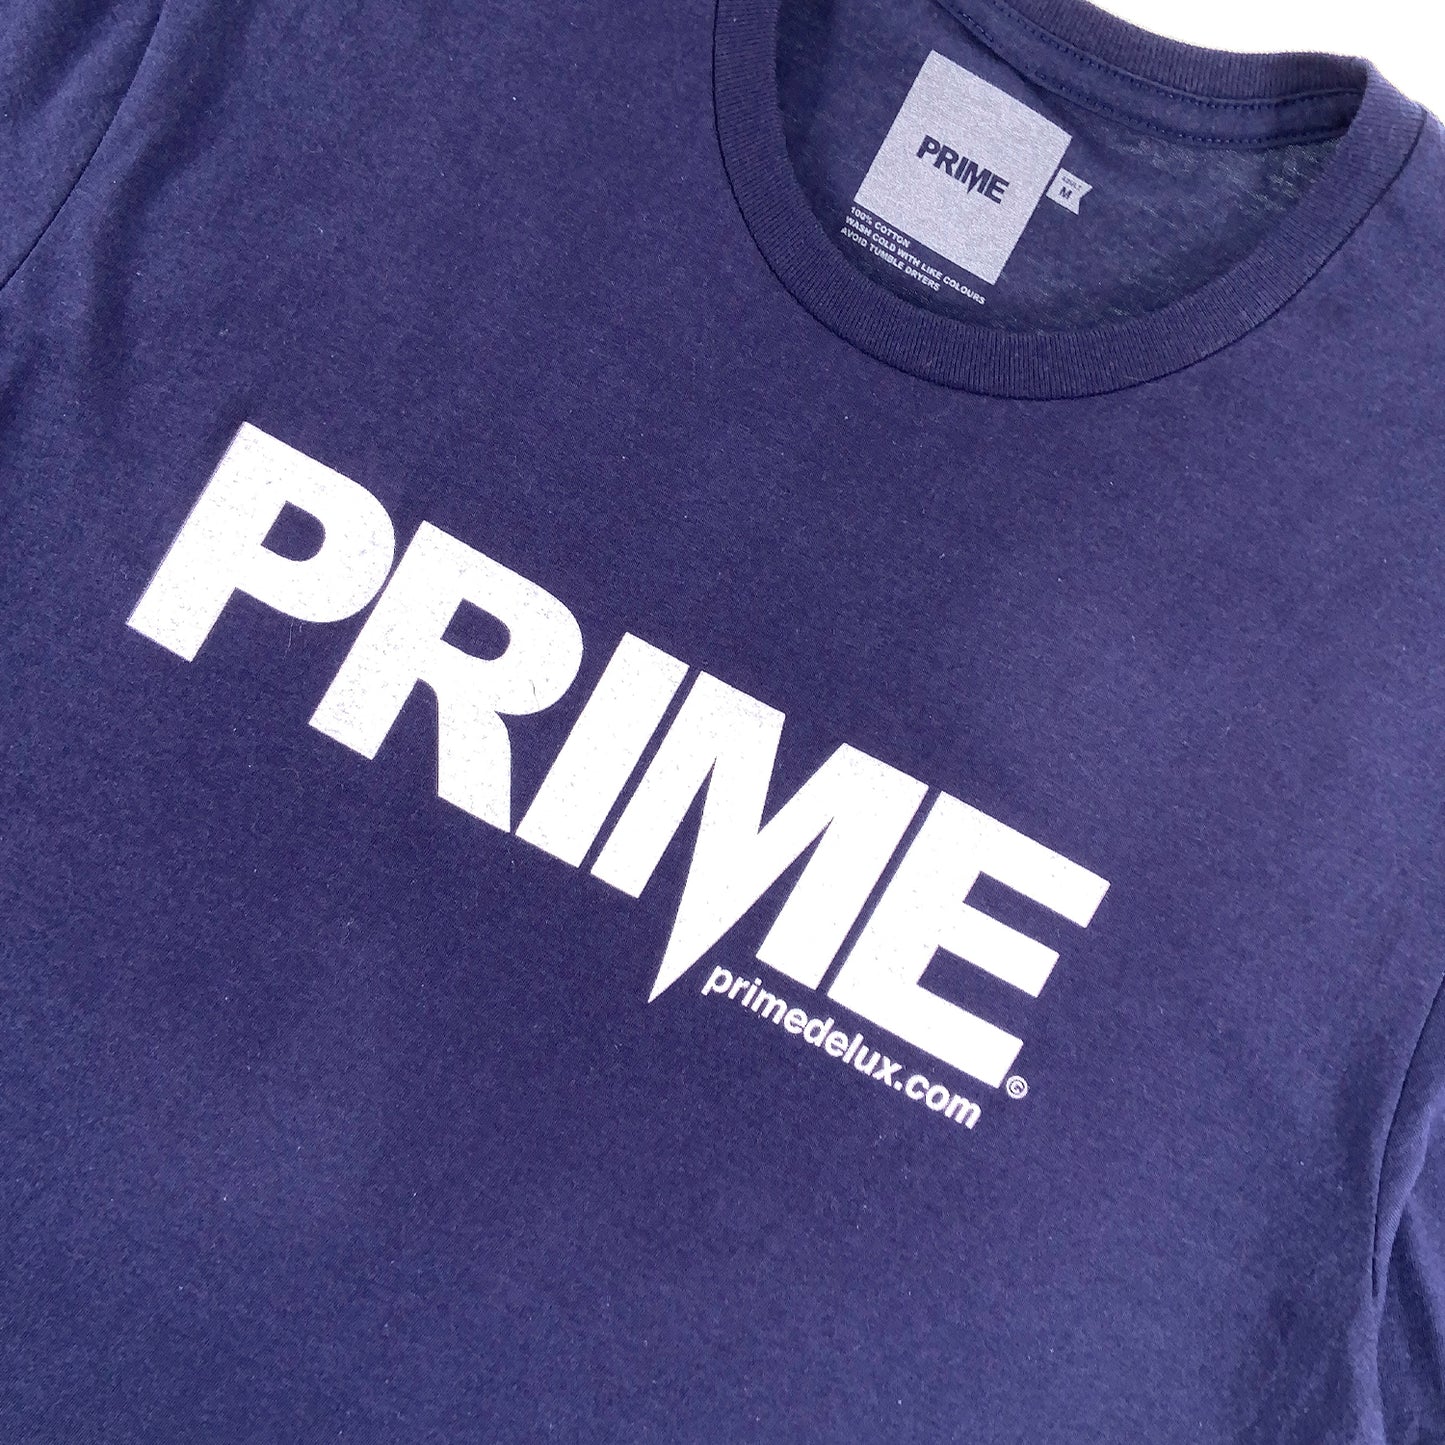 PRIME DELUX OG PREMIUM SHORT SLEEVE T-SHIRT- NAVY / WHITE - Prime Delux Store